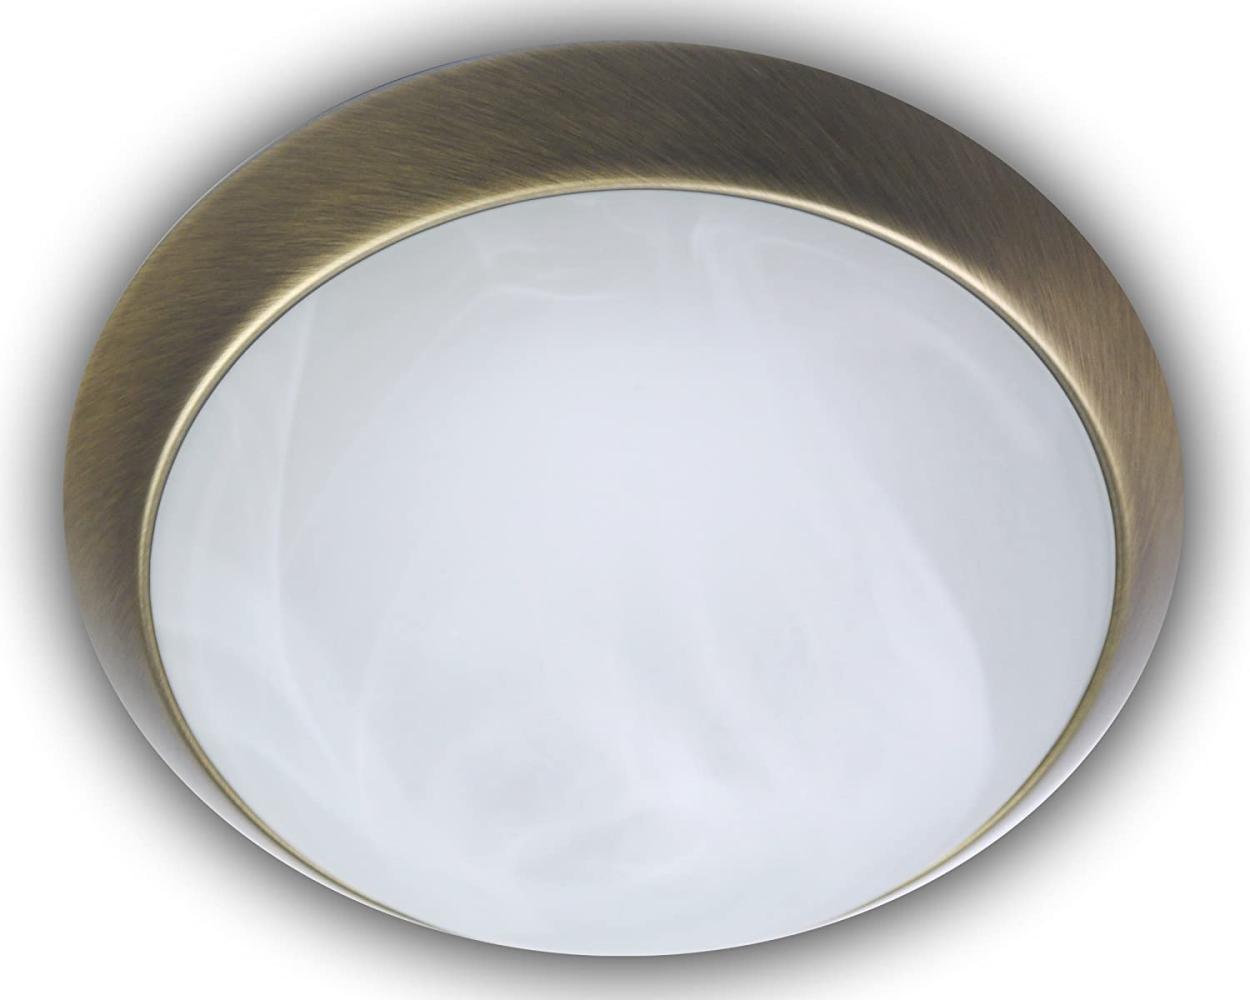 LED-Deckenleuchte rund, Glas Alabaster, Dekorring Altmessing, Ø 30cm Bild 1